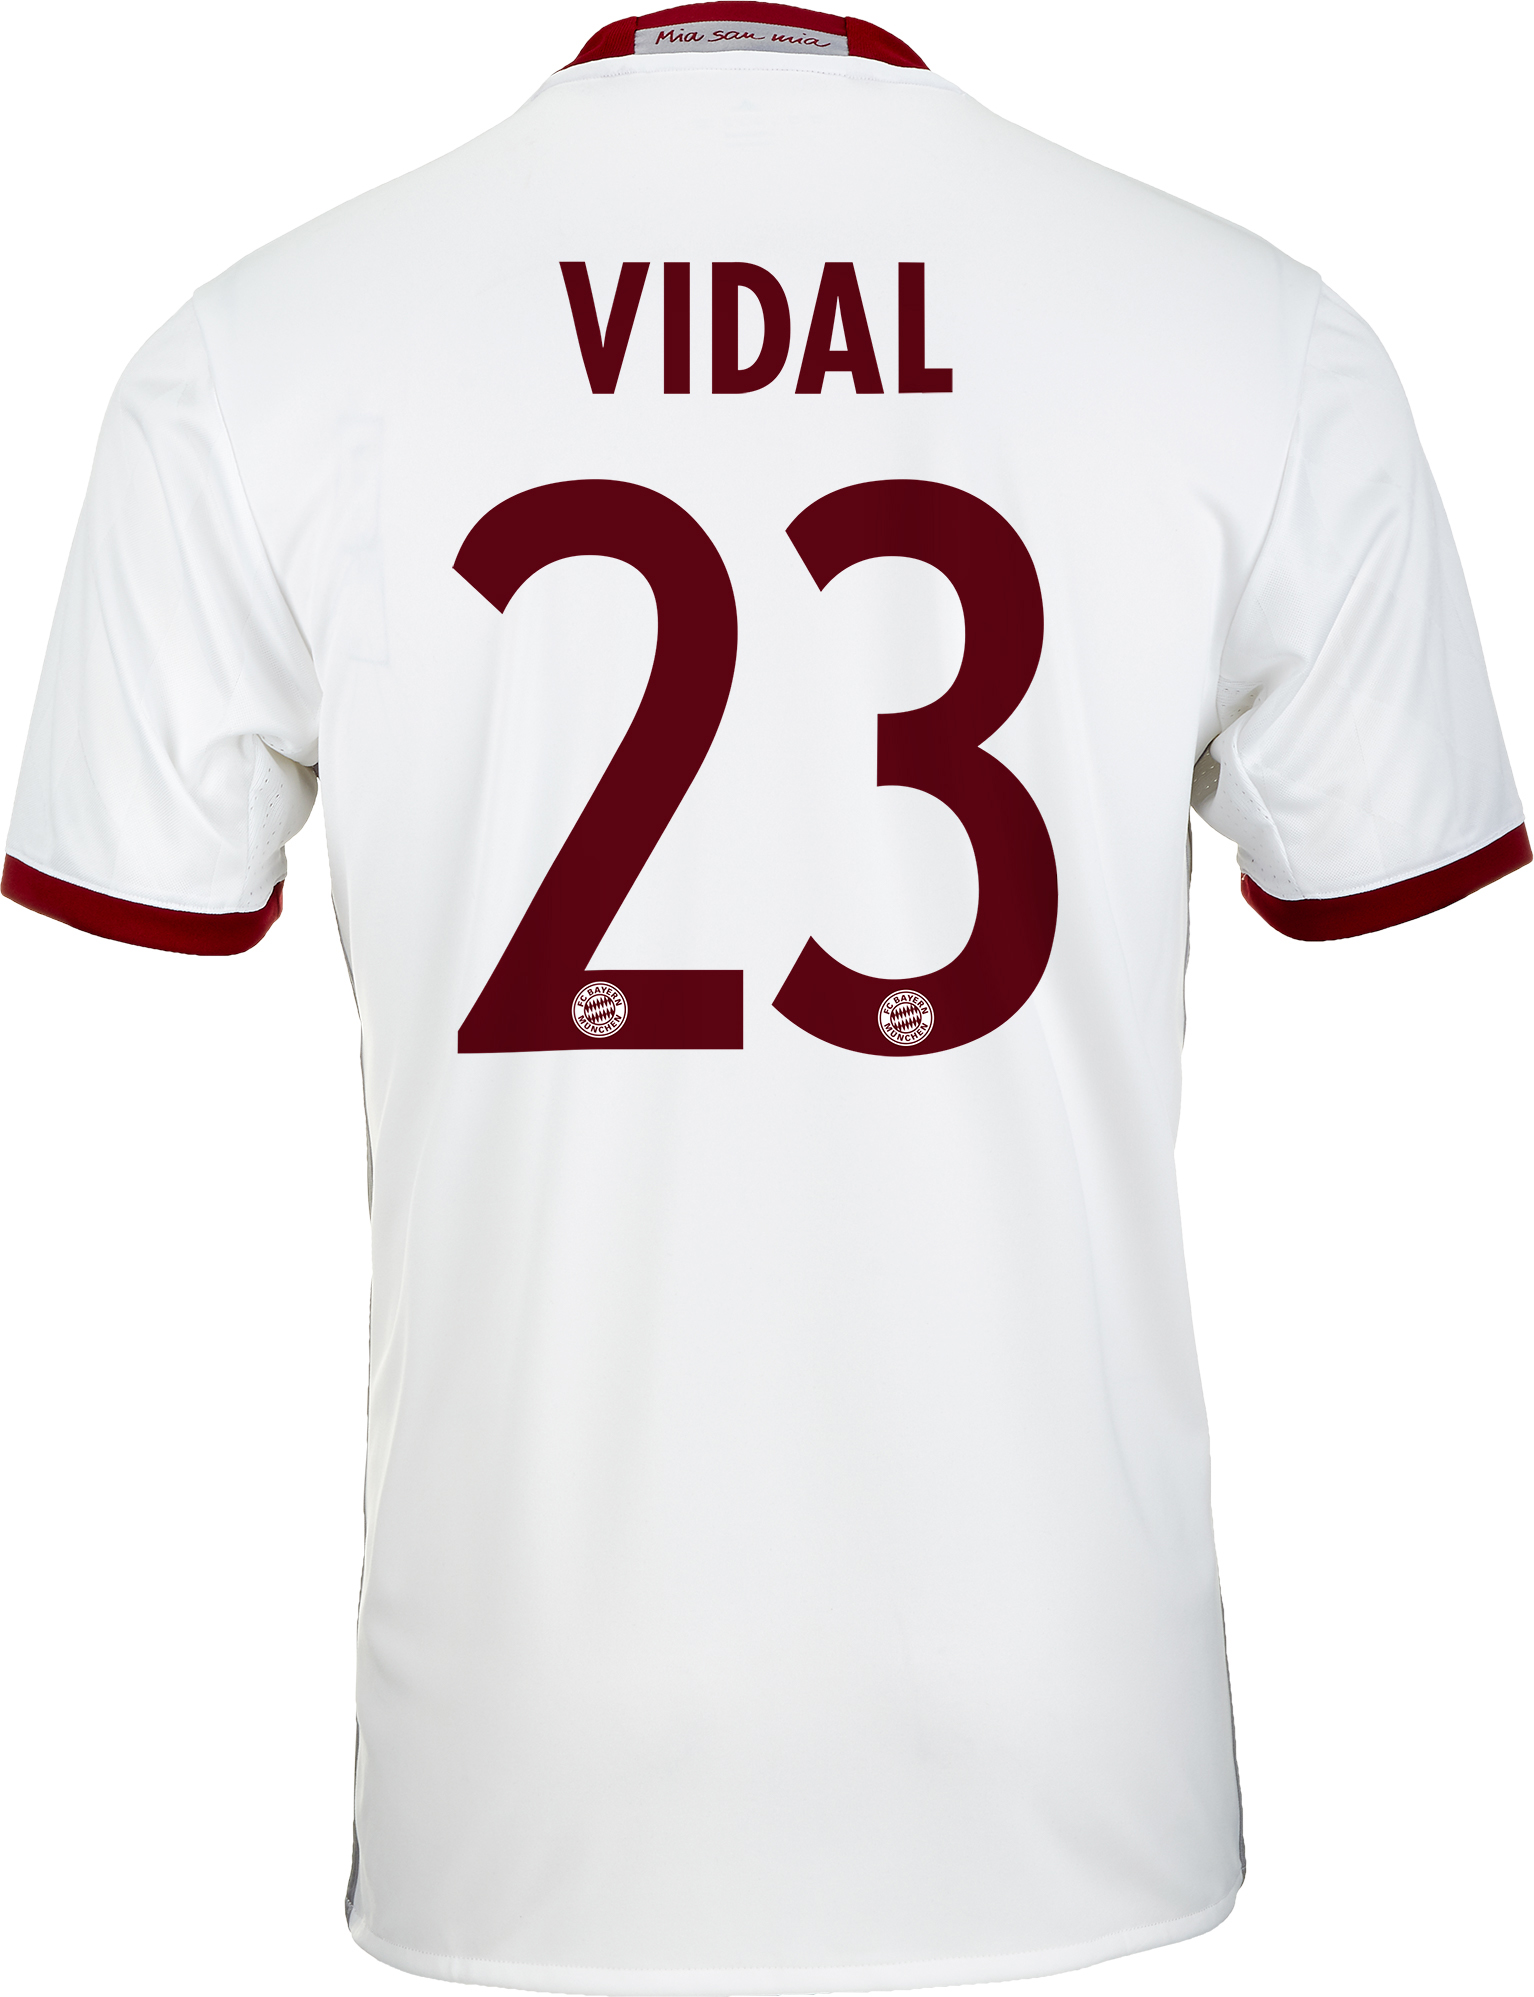 adidas Vidal Jersey - Bayern Munich